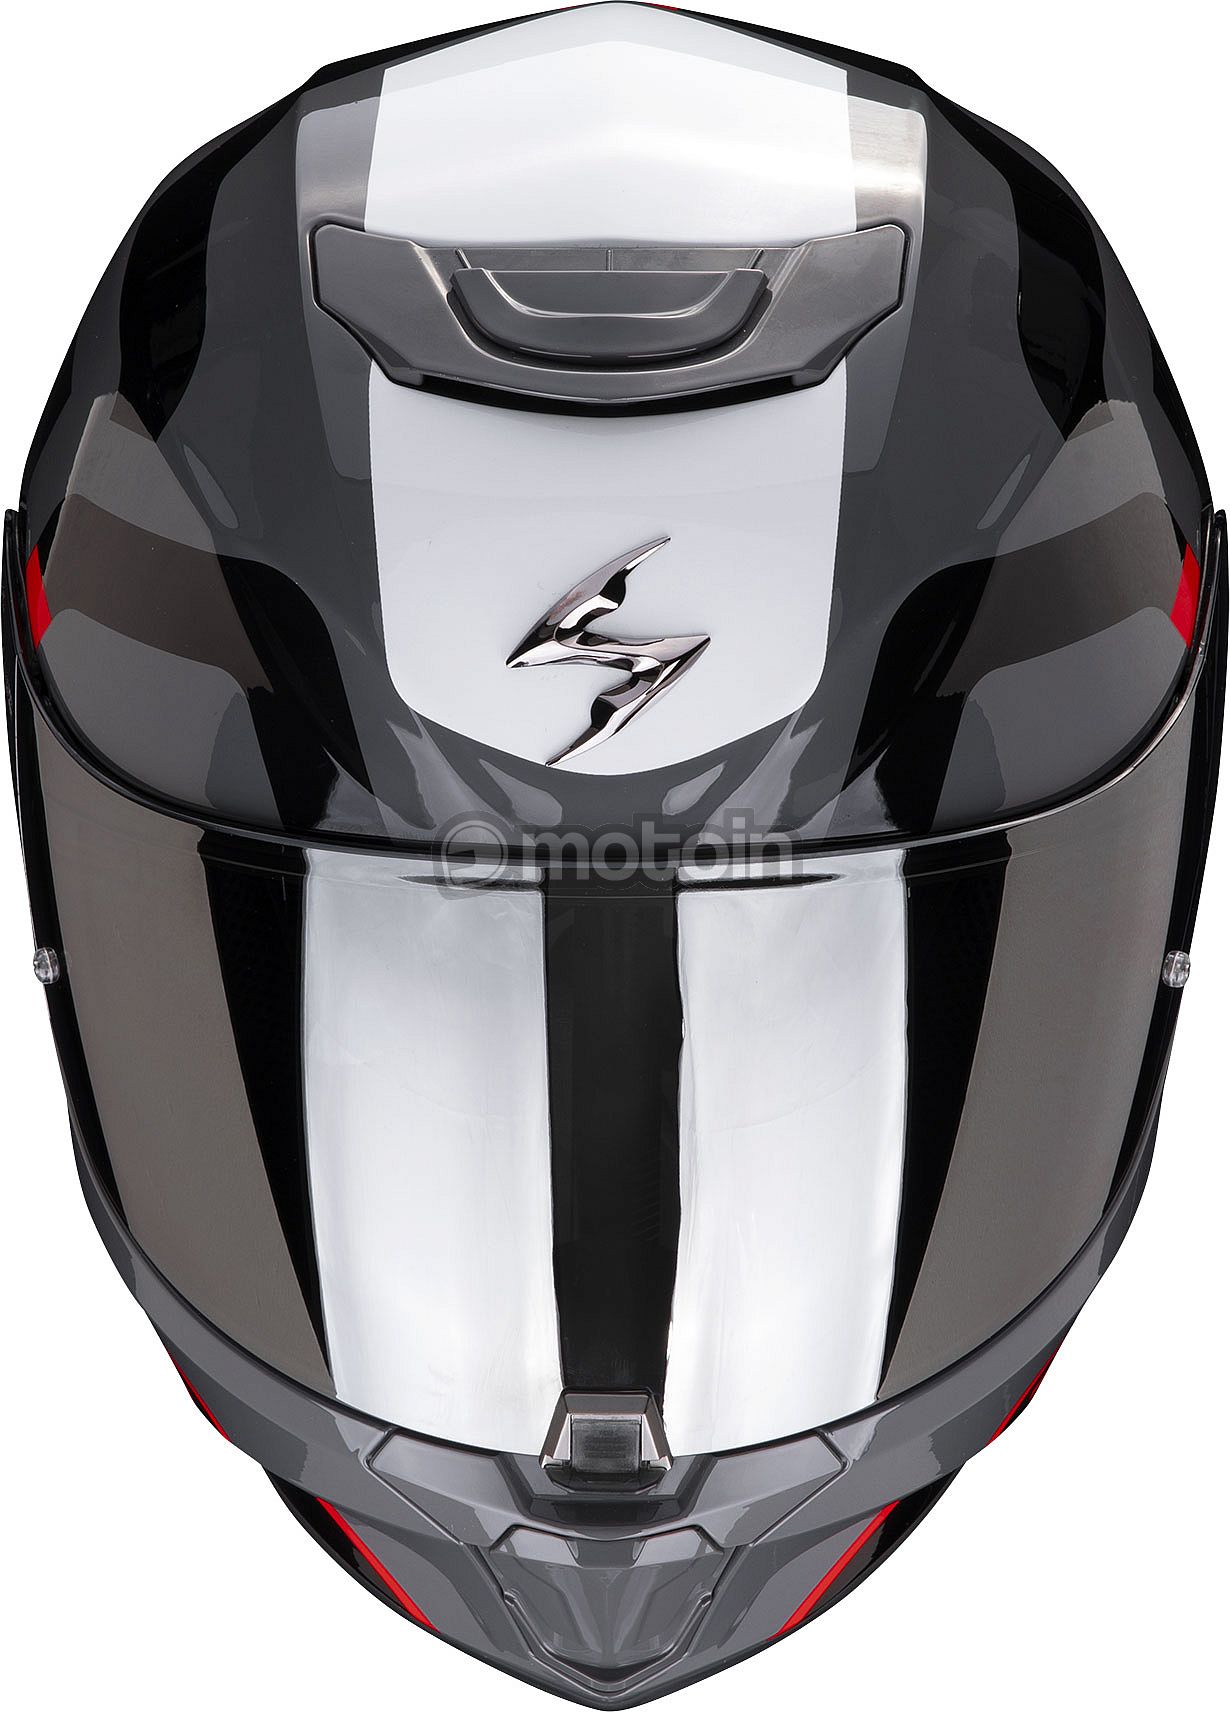 Casque Exo-391 Dream Scorpion moto : , casque intégral de  moto